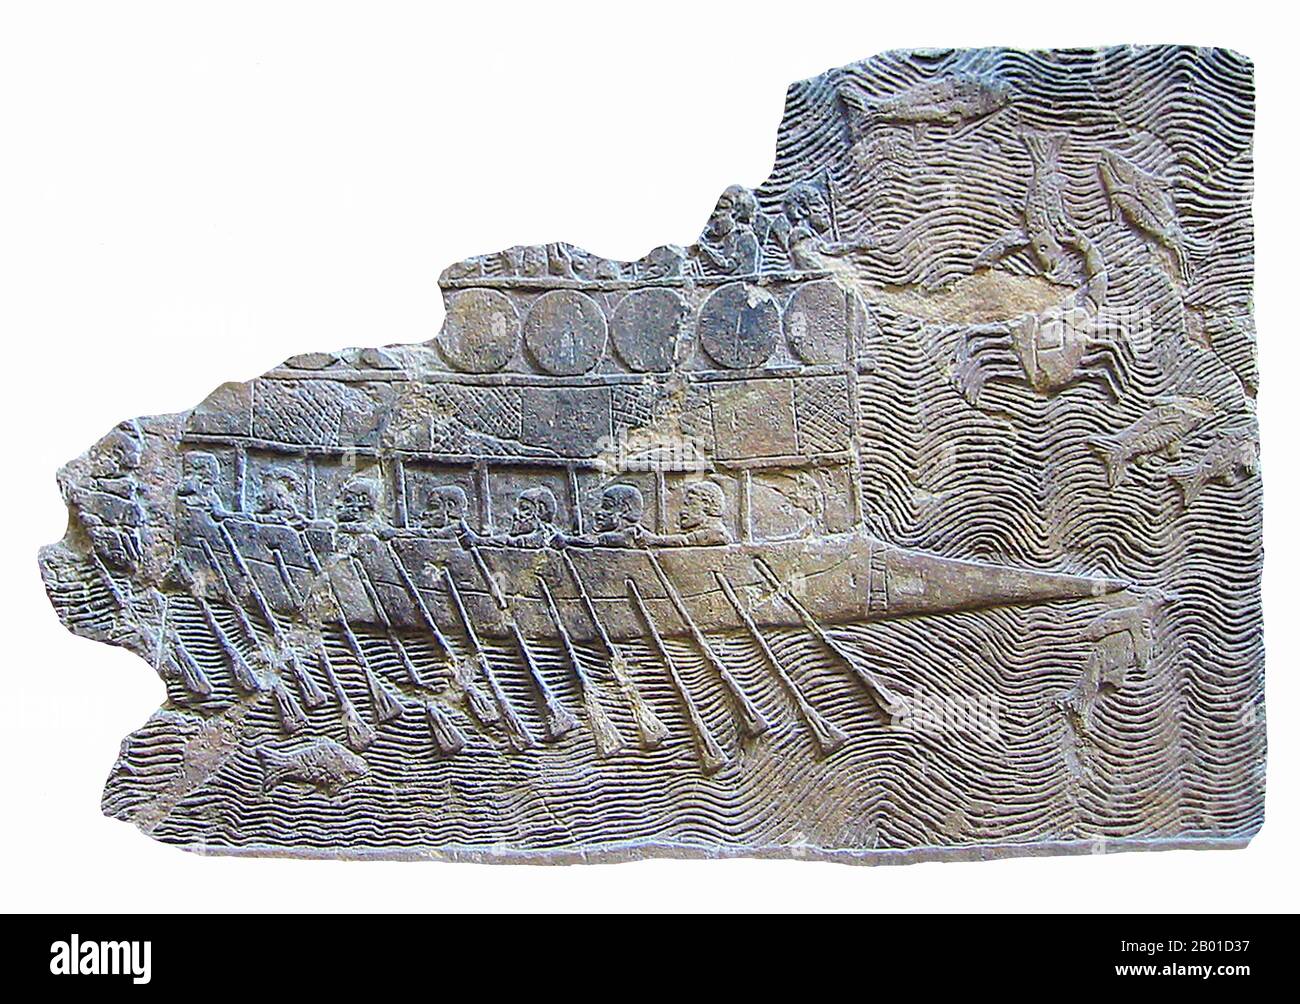 Irak: Fragment eines Basreliefs eines assyrischen Kriegsschiffs aus dem Palast in Ninive, c. 700 BCE. Foto von World Imaging (CC BY-SA 3,0 Lizenz). Dieses assyrische Schiff wurde wahrscheinlich gebaut und möglicherweise von Phöniziern bemannt, die von Sanherib, dem Sohn von Sargon II. Von Akkad, eingesetzt wurden, dem er auf dem Thron von Assyrien nachfolgte (705–681 v. Chr.). Es ist ein bireme, mit zwei Reihen Rudern. Schilde sind um den Überbau herum befestigt, wie an den Befestigungen einiger Stadtmauern. Der spitze Bogen ist ein Widder, um feindliche Schifffahrt zu durchbohren. Stockfoto